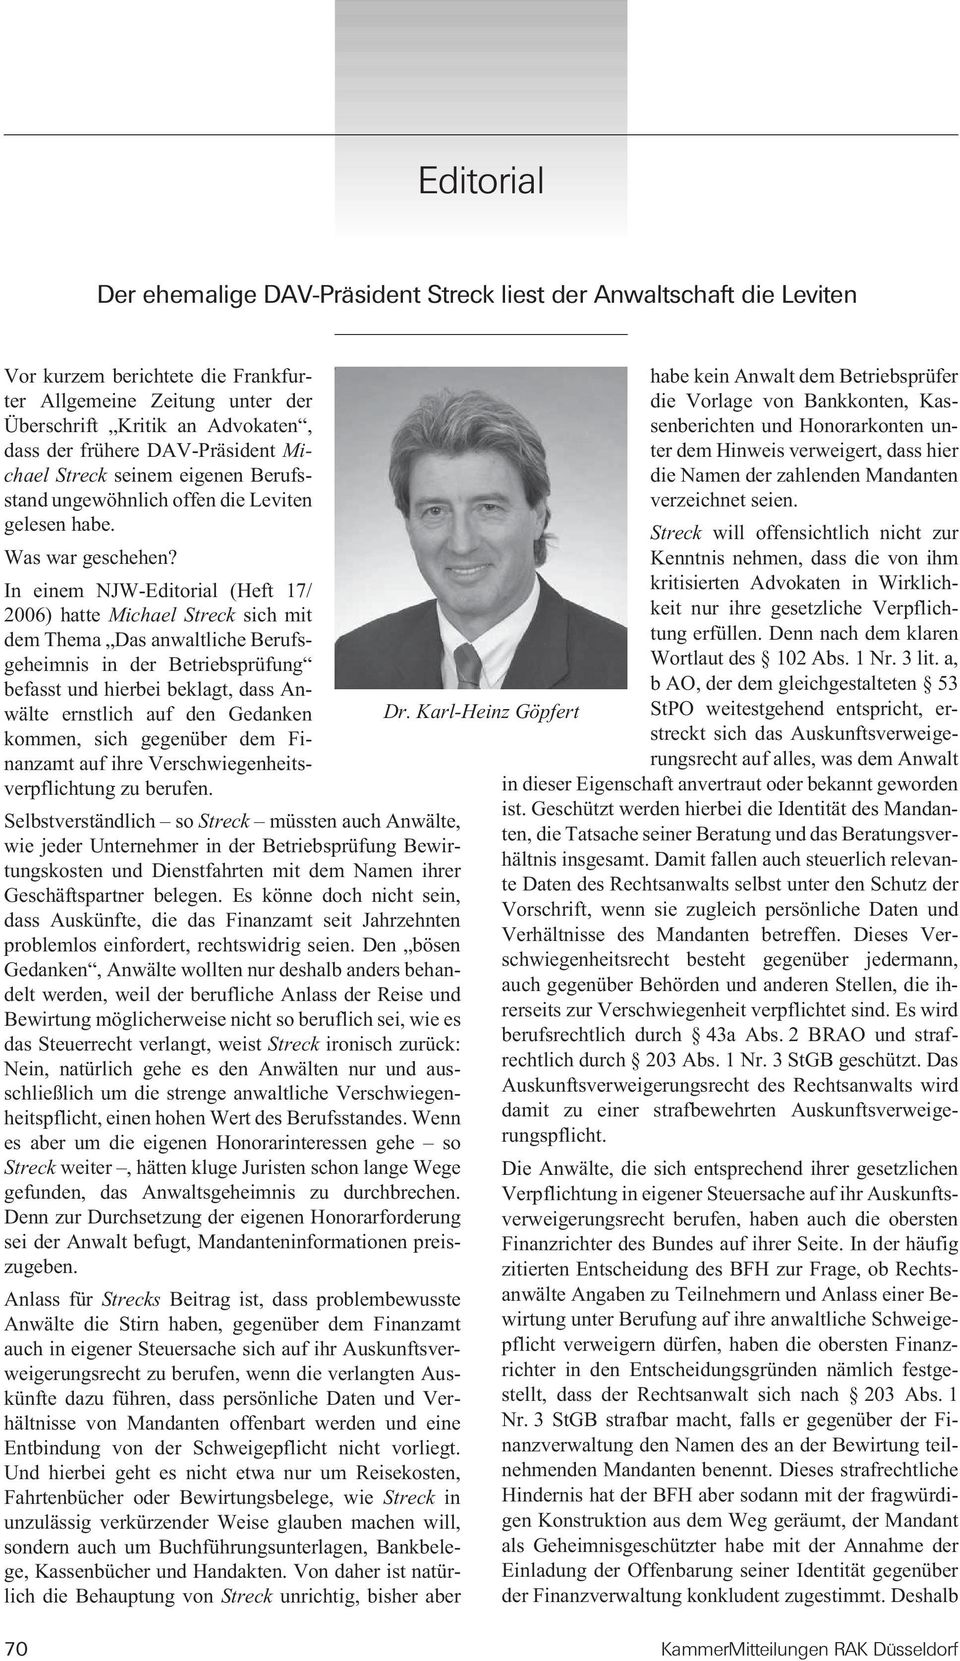 In einem NJW-Editorial (Heft 17/ 2006) hatte Michael Streck sich mit dem Thema Das anwaltliche Berufsgeheimnis in der Betriebsprüfung befasst und hierbei beklagt, dass Anwälte ernstlich auf den